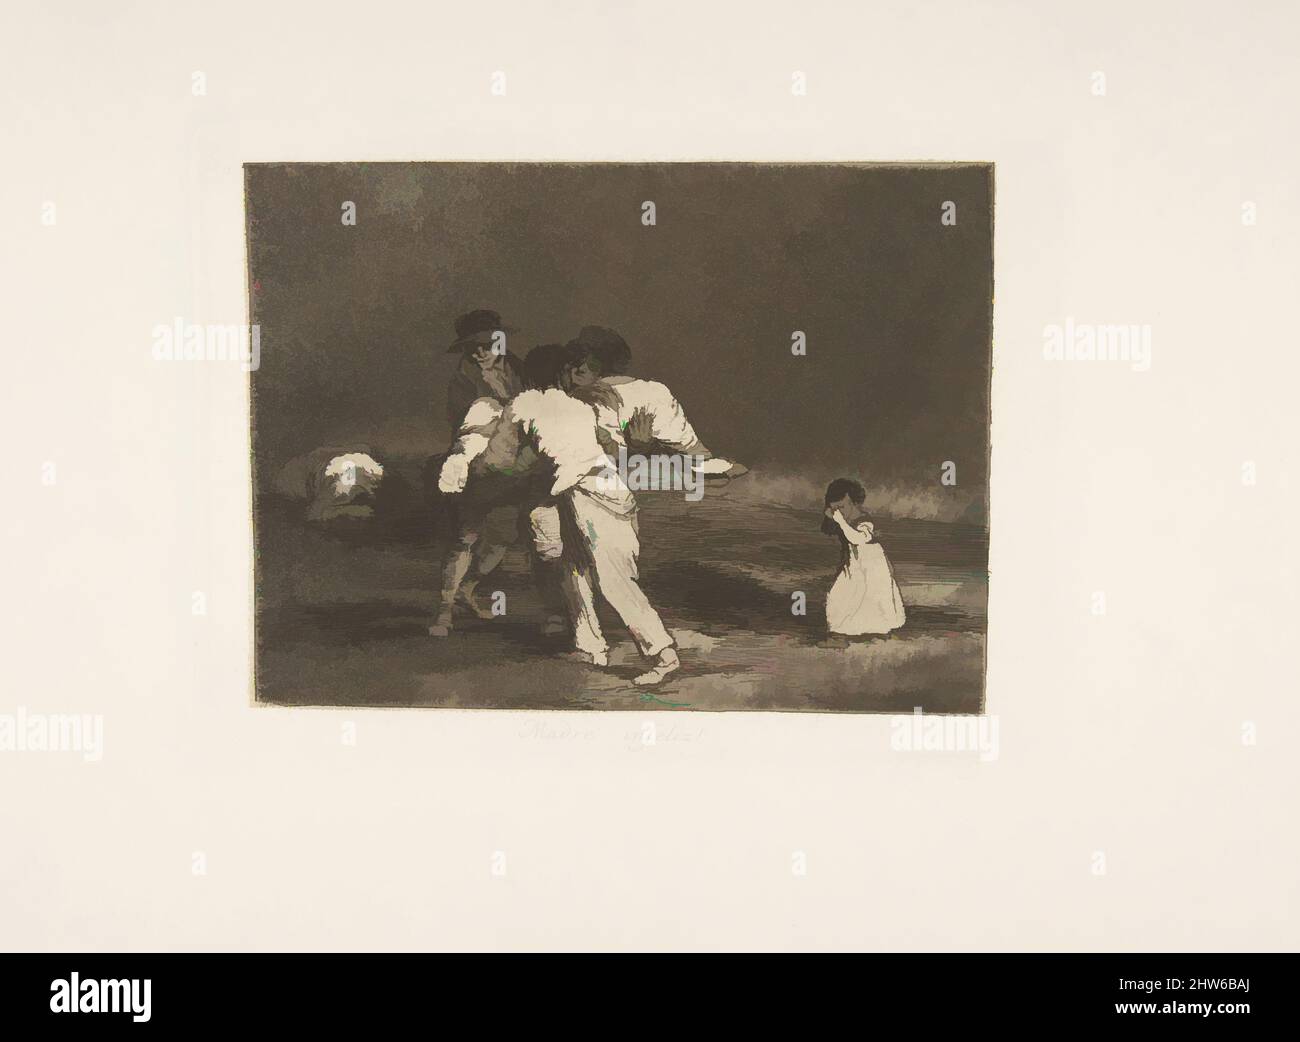 Art inspiré par la planche 50 de 'les désastres de la guerre' (Los Desastres de la Guerra): 'Mère malheureuse!.' (Madre Infeliz!), 1811–12 (publié en 1863), décapage, aquatint bruni et point sec, plaque : 6 1/8 × 8 1/16 po. (15,5 × 20,5 cm), Prints, Goya (Francisco de Goya y Lucientes) (espagnol, oeuvres classiques modernisées par Artotop avec une touche de modernité. Formes, couleur et valeur, impact visuel accrocheur sur l'art émotions par la liberté d'œuvres d'art d'une manière contemporaine. Un message intemporel qui cherche une nouvelle direction créative. Artistes qui se tournent vers le support numérique et créent le NFT Artotop Banque D'Images